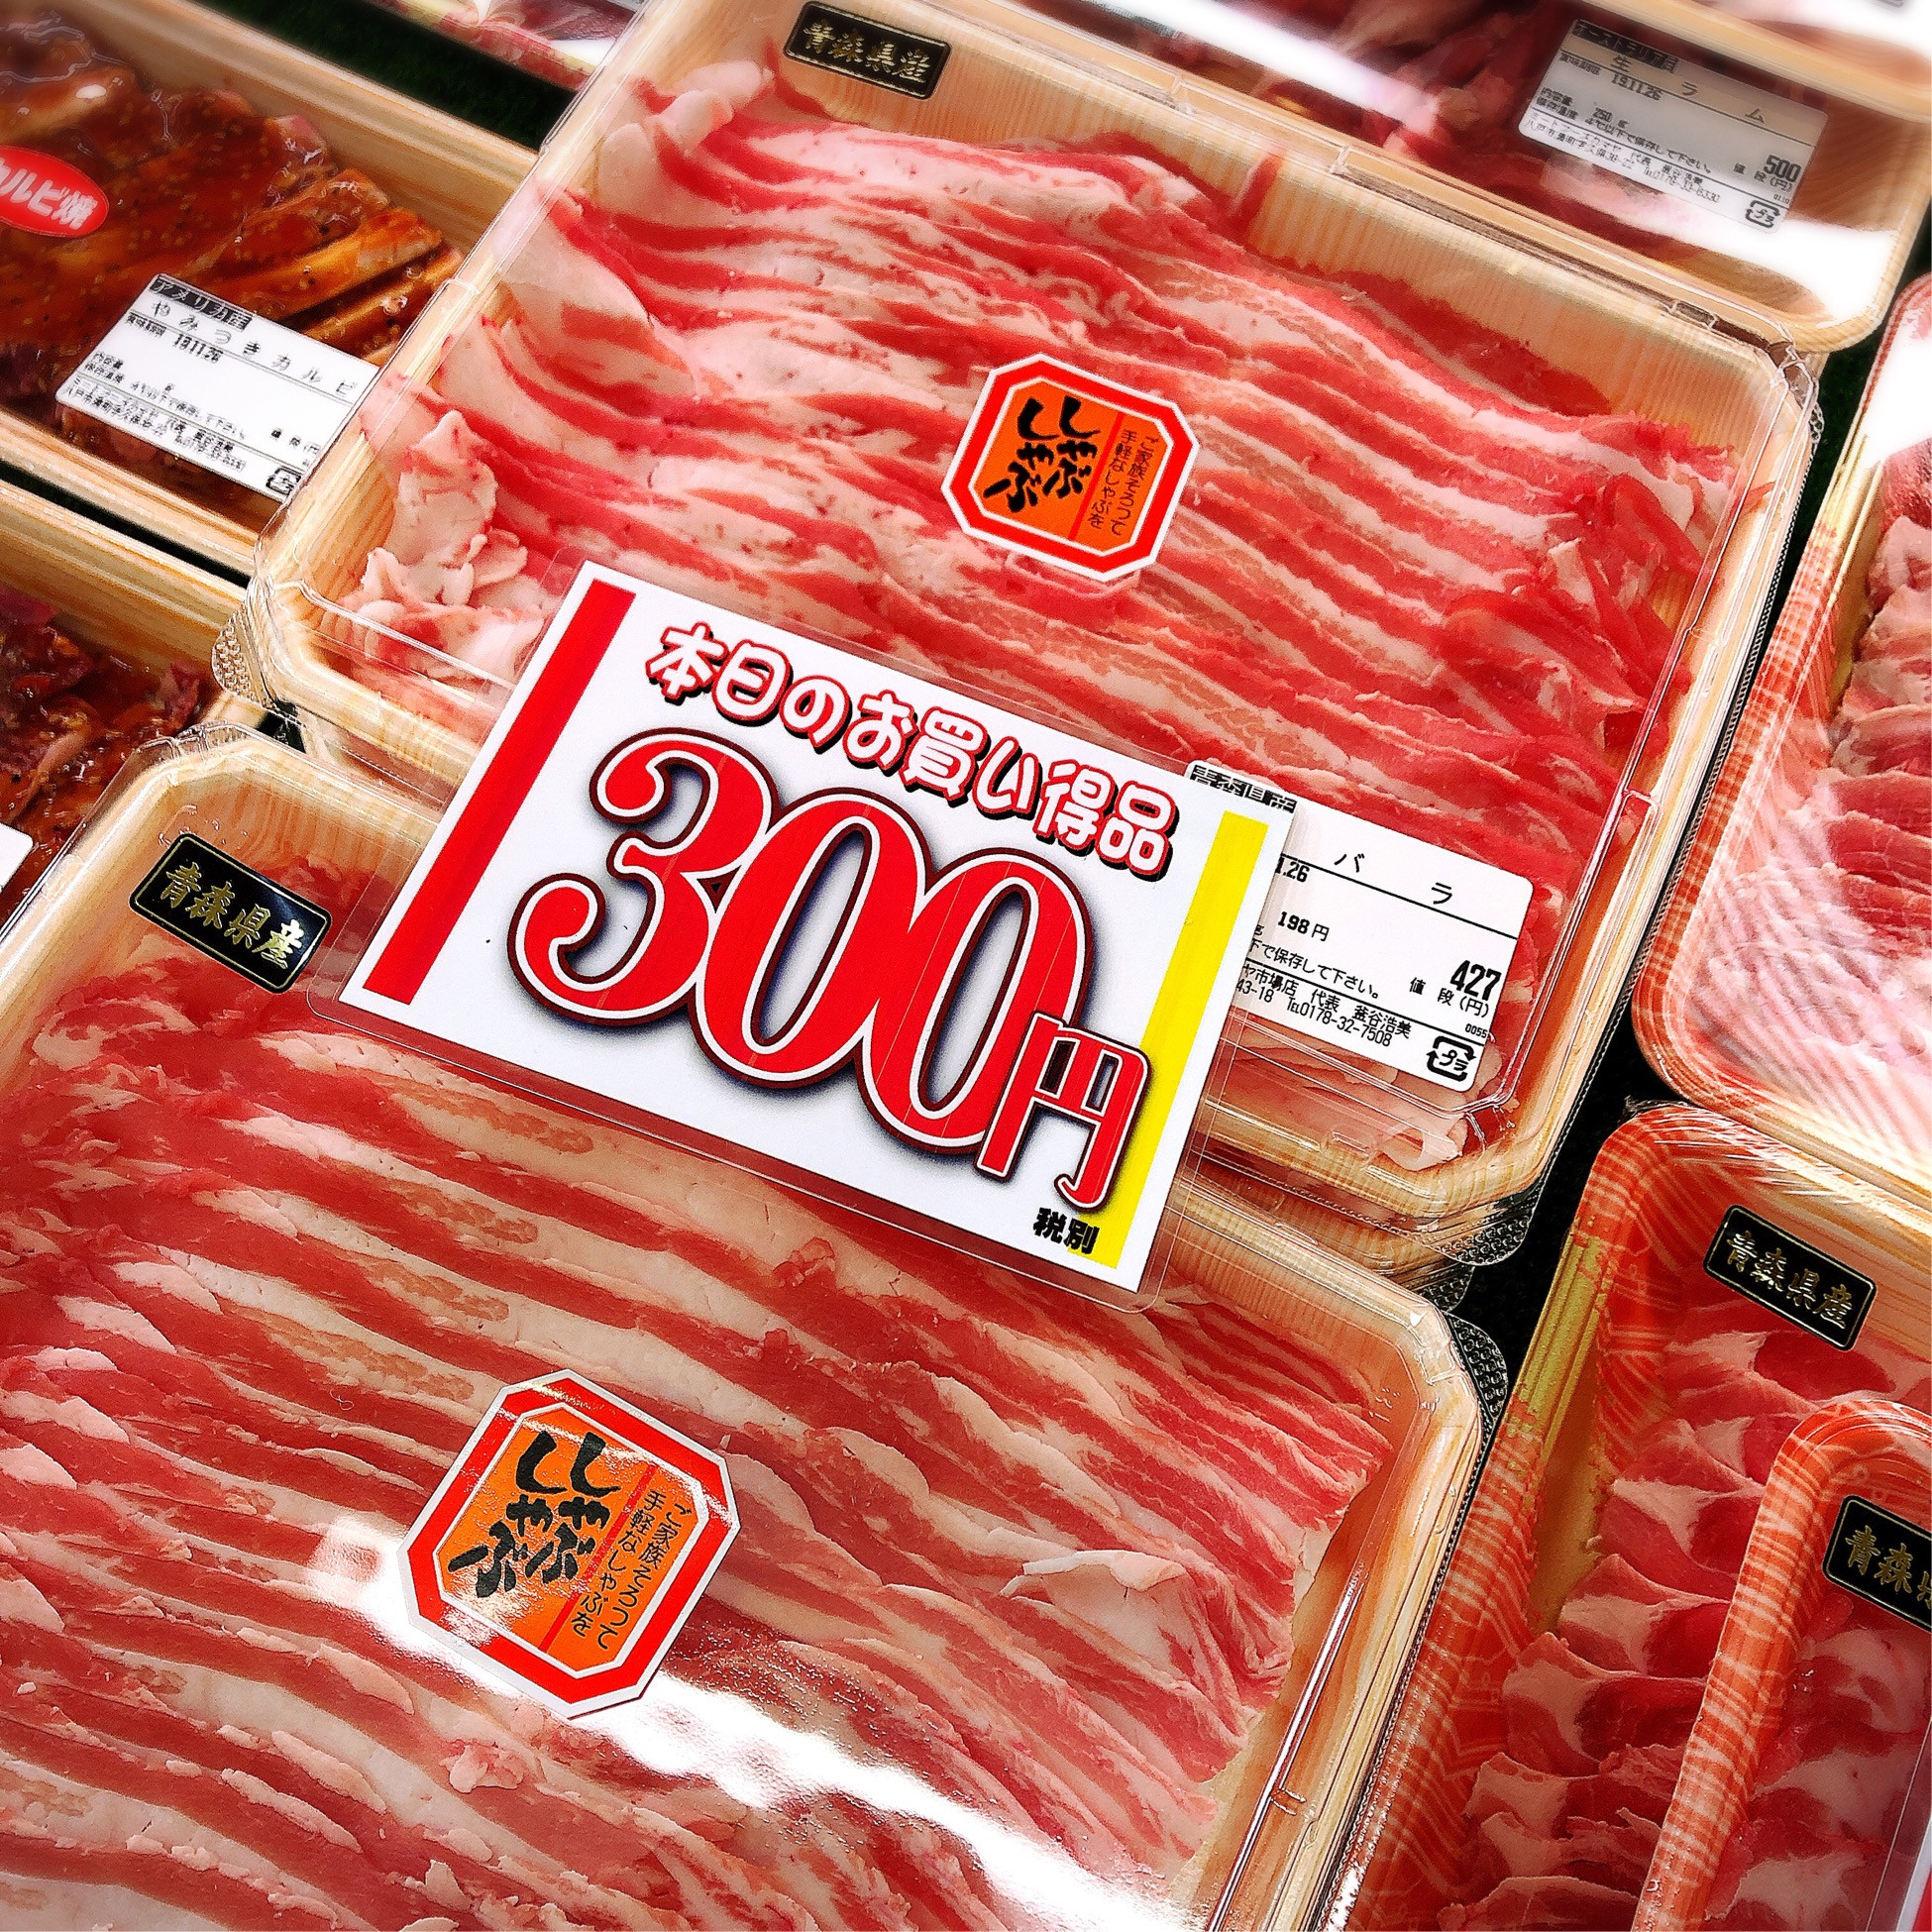 本日は青森県産豚バラしゃぶしゃぶ用がお買得です。